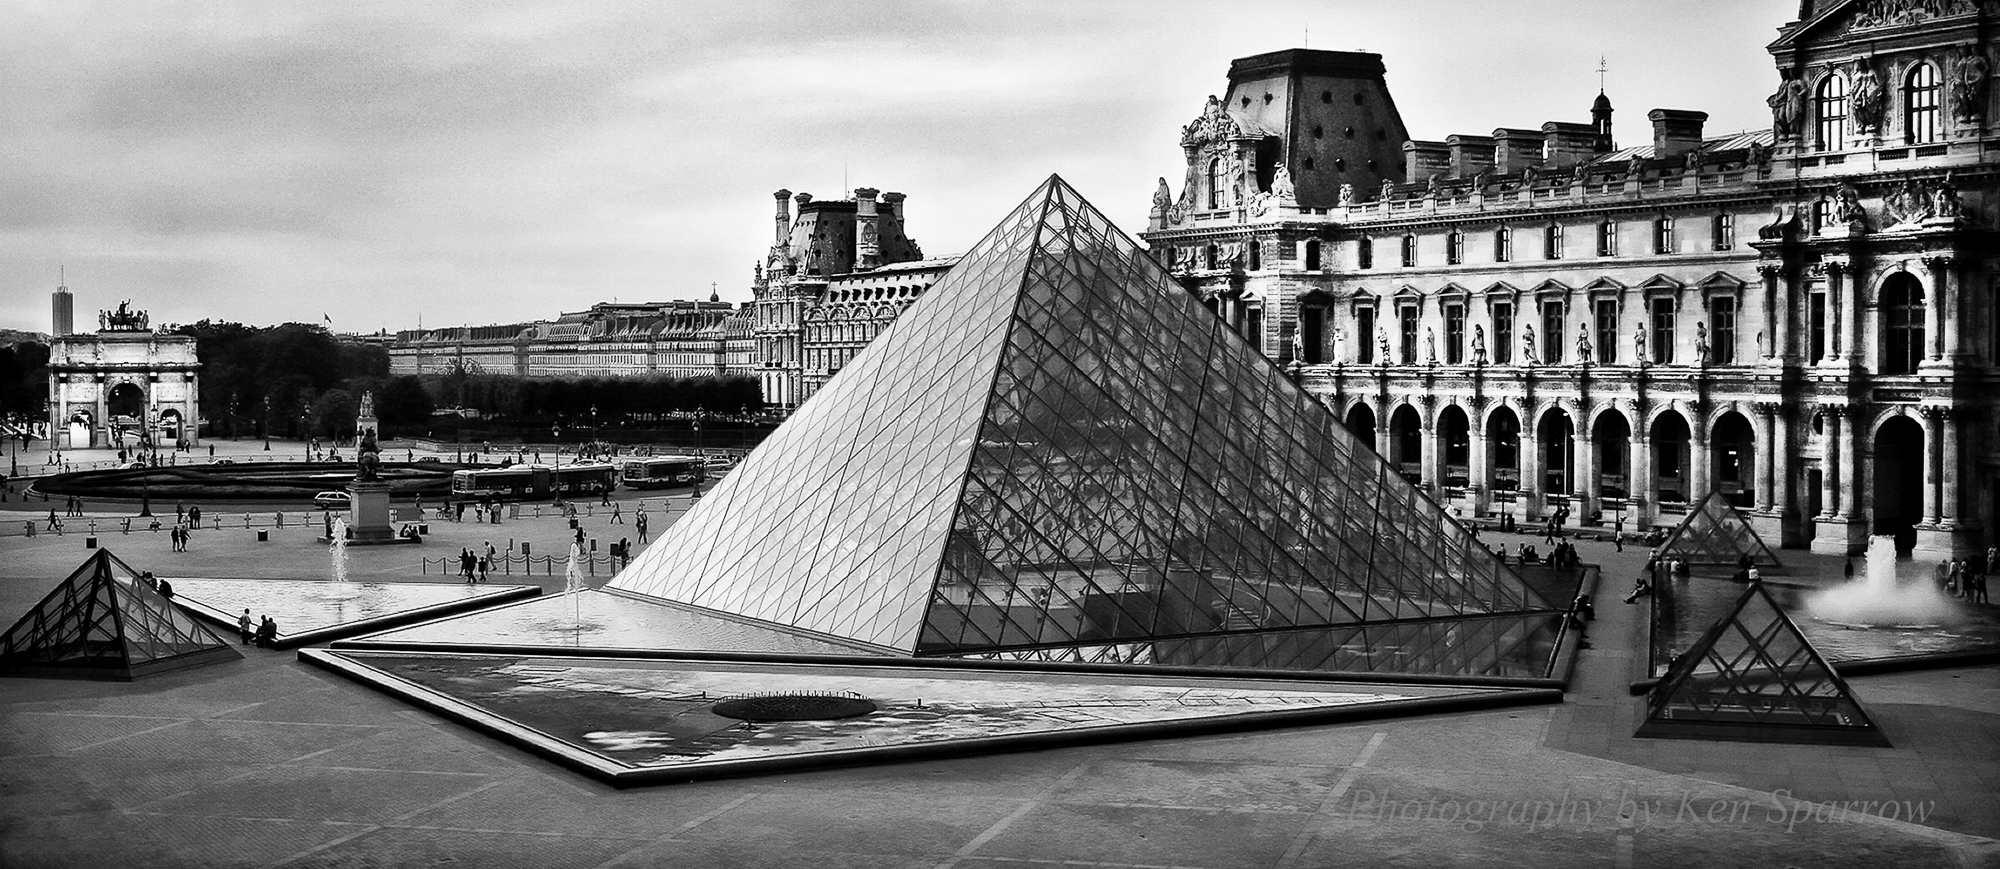 06EU_3266 15x8 Louvre2 2000pks.jpg